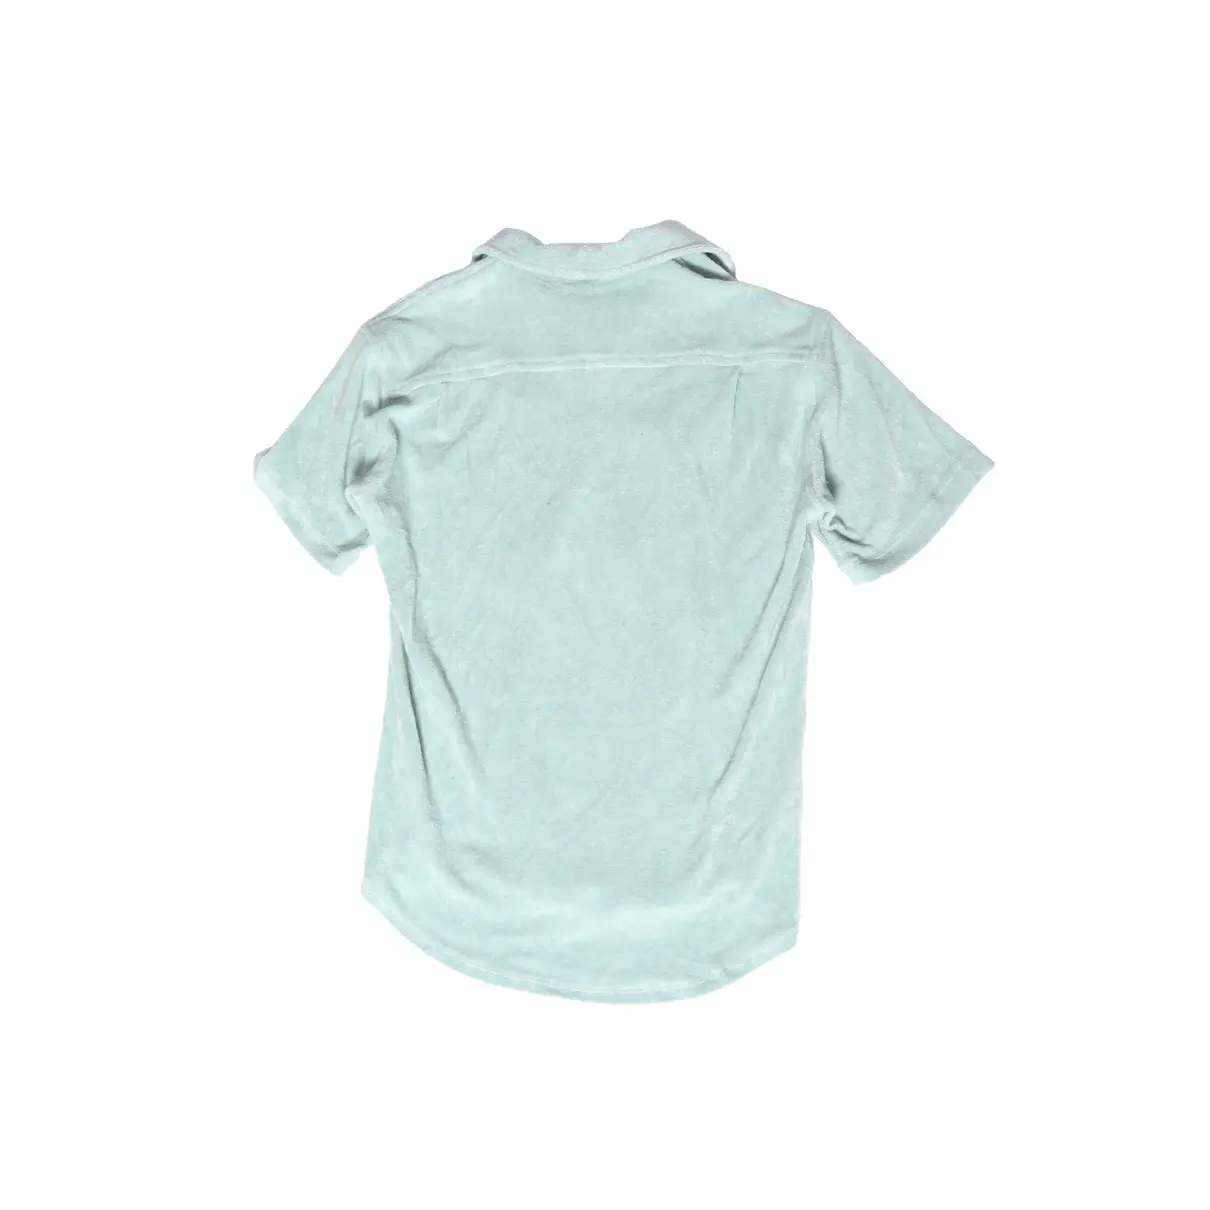 Buy The Elder Statesman Velvet shirt online